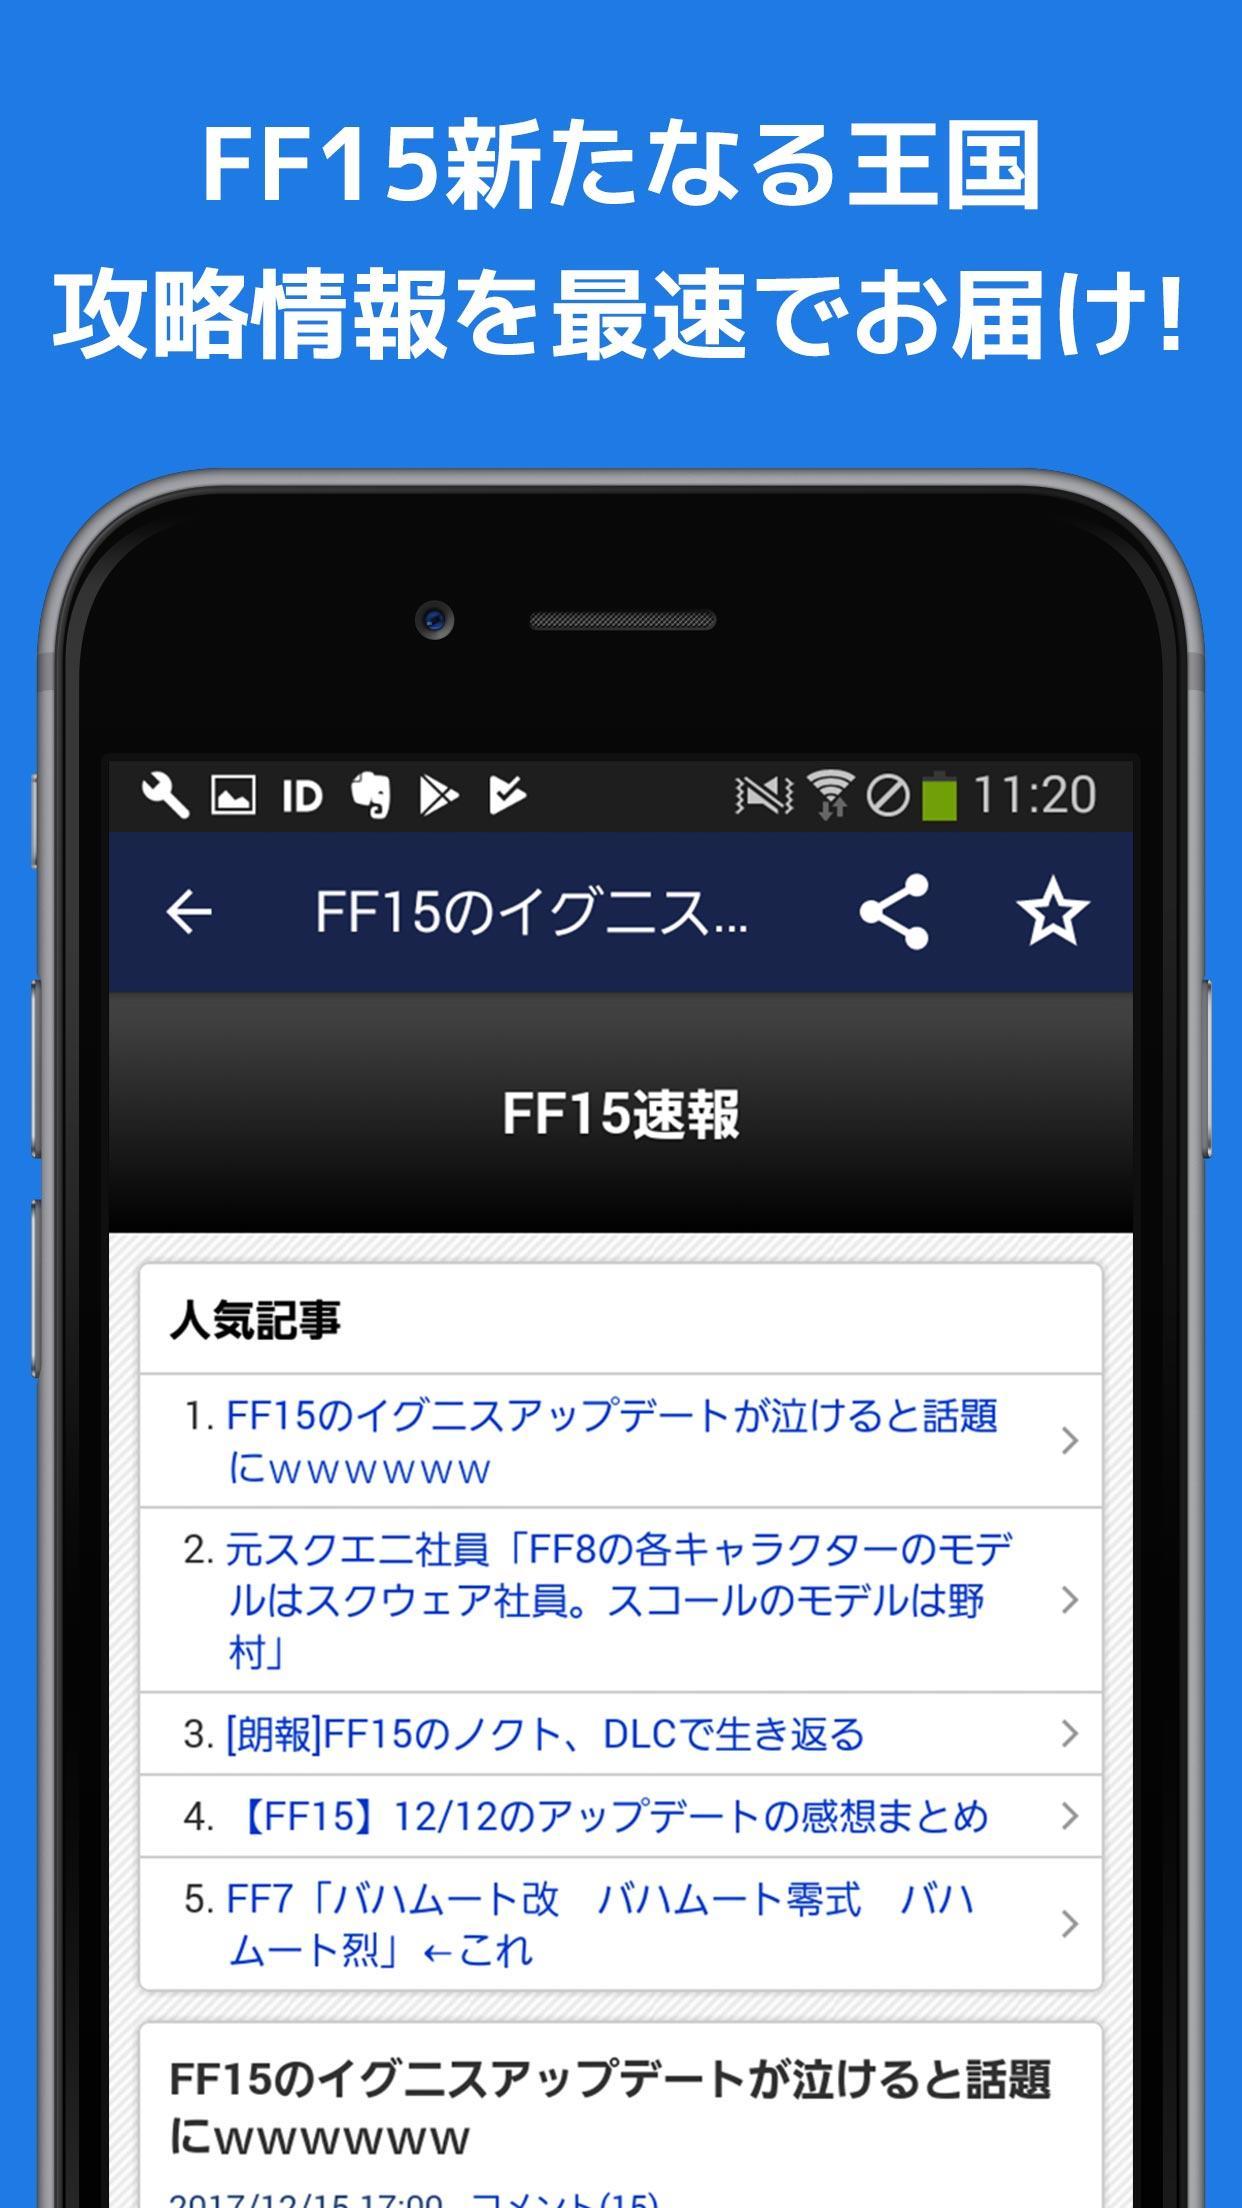 最速攻略まとめリーダー For Ff15新たなる王国 For Android Apk Download